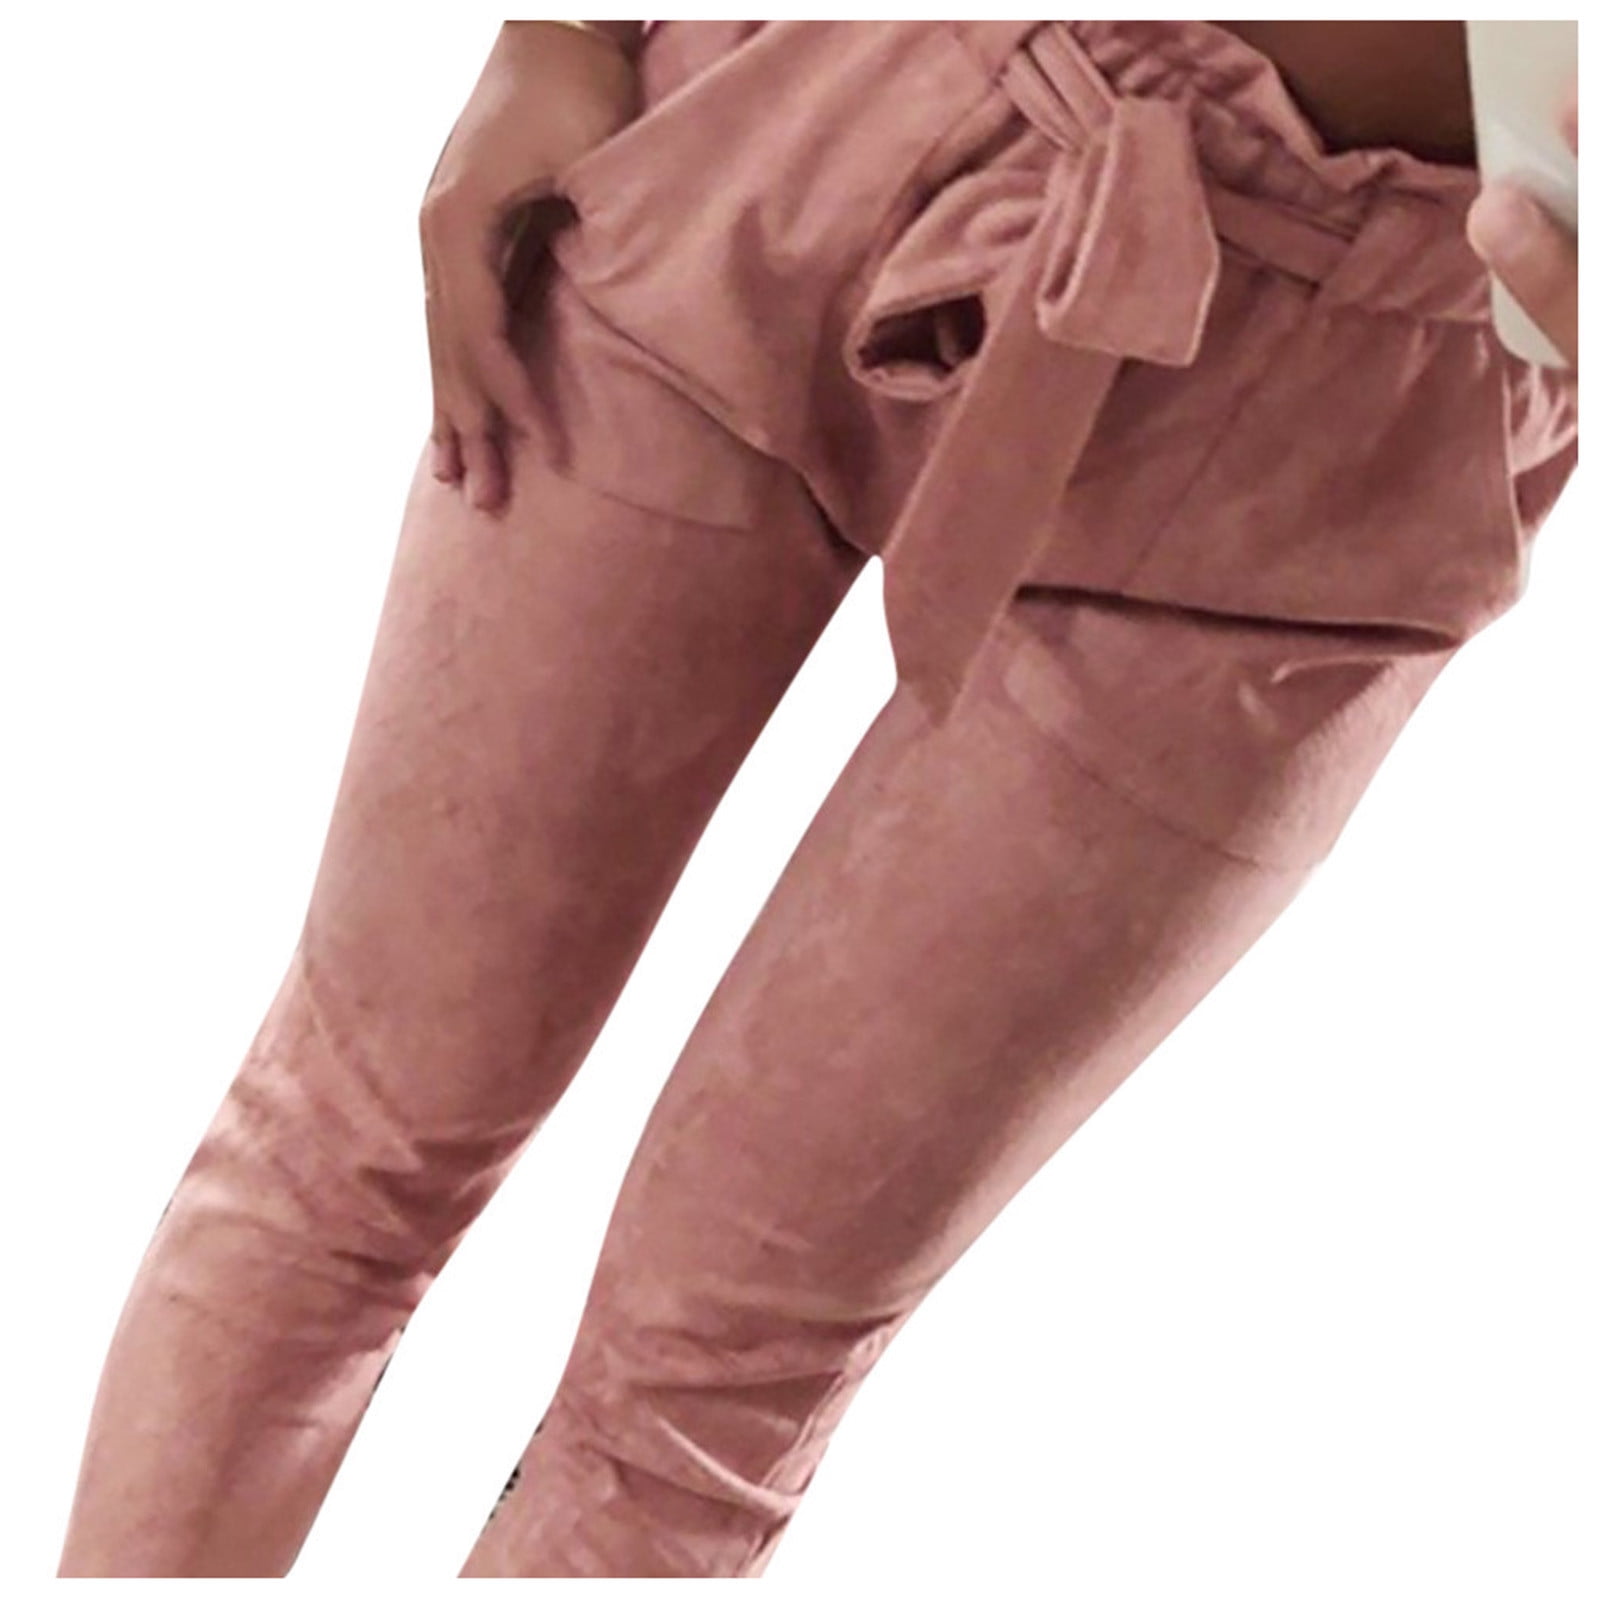 Dress Clothes for Women Business Casual Pants Suit Casual Pants High Elastic Lace Waist Pants Pockets Bowtie Waist Up Pants Split Leg Pants for Women - Walmart.com